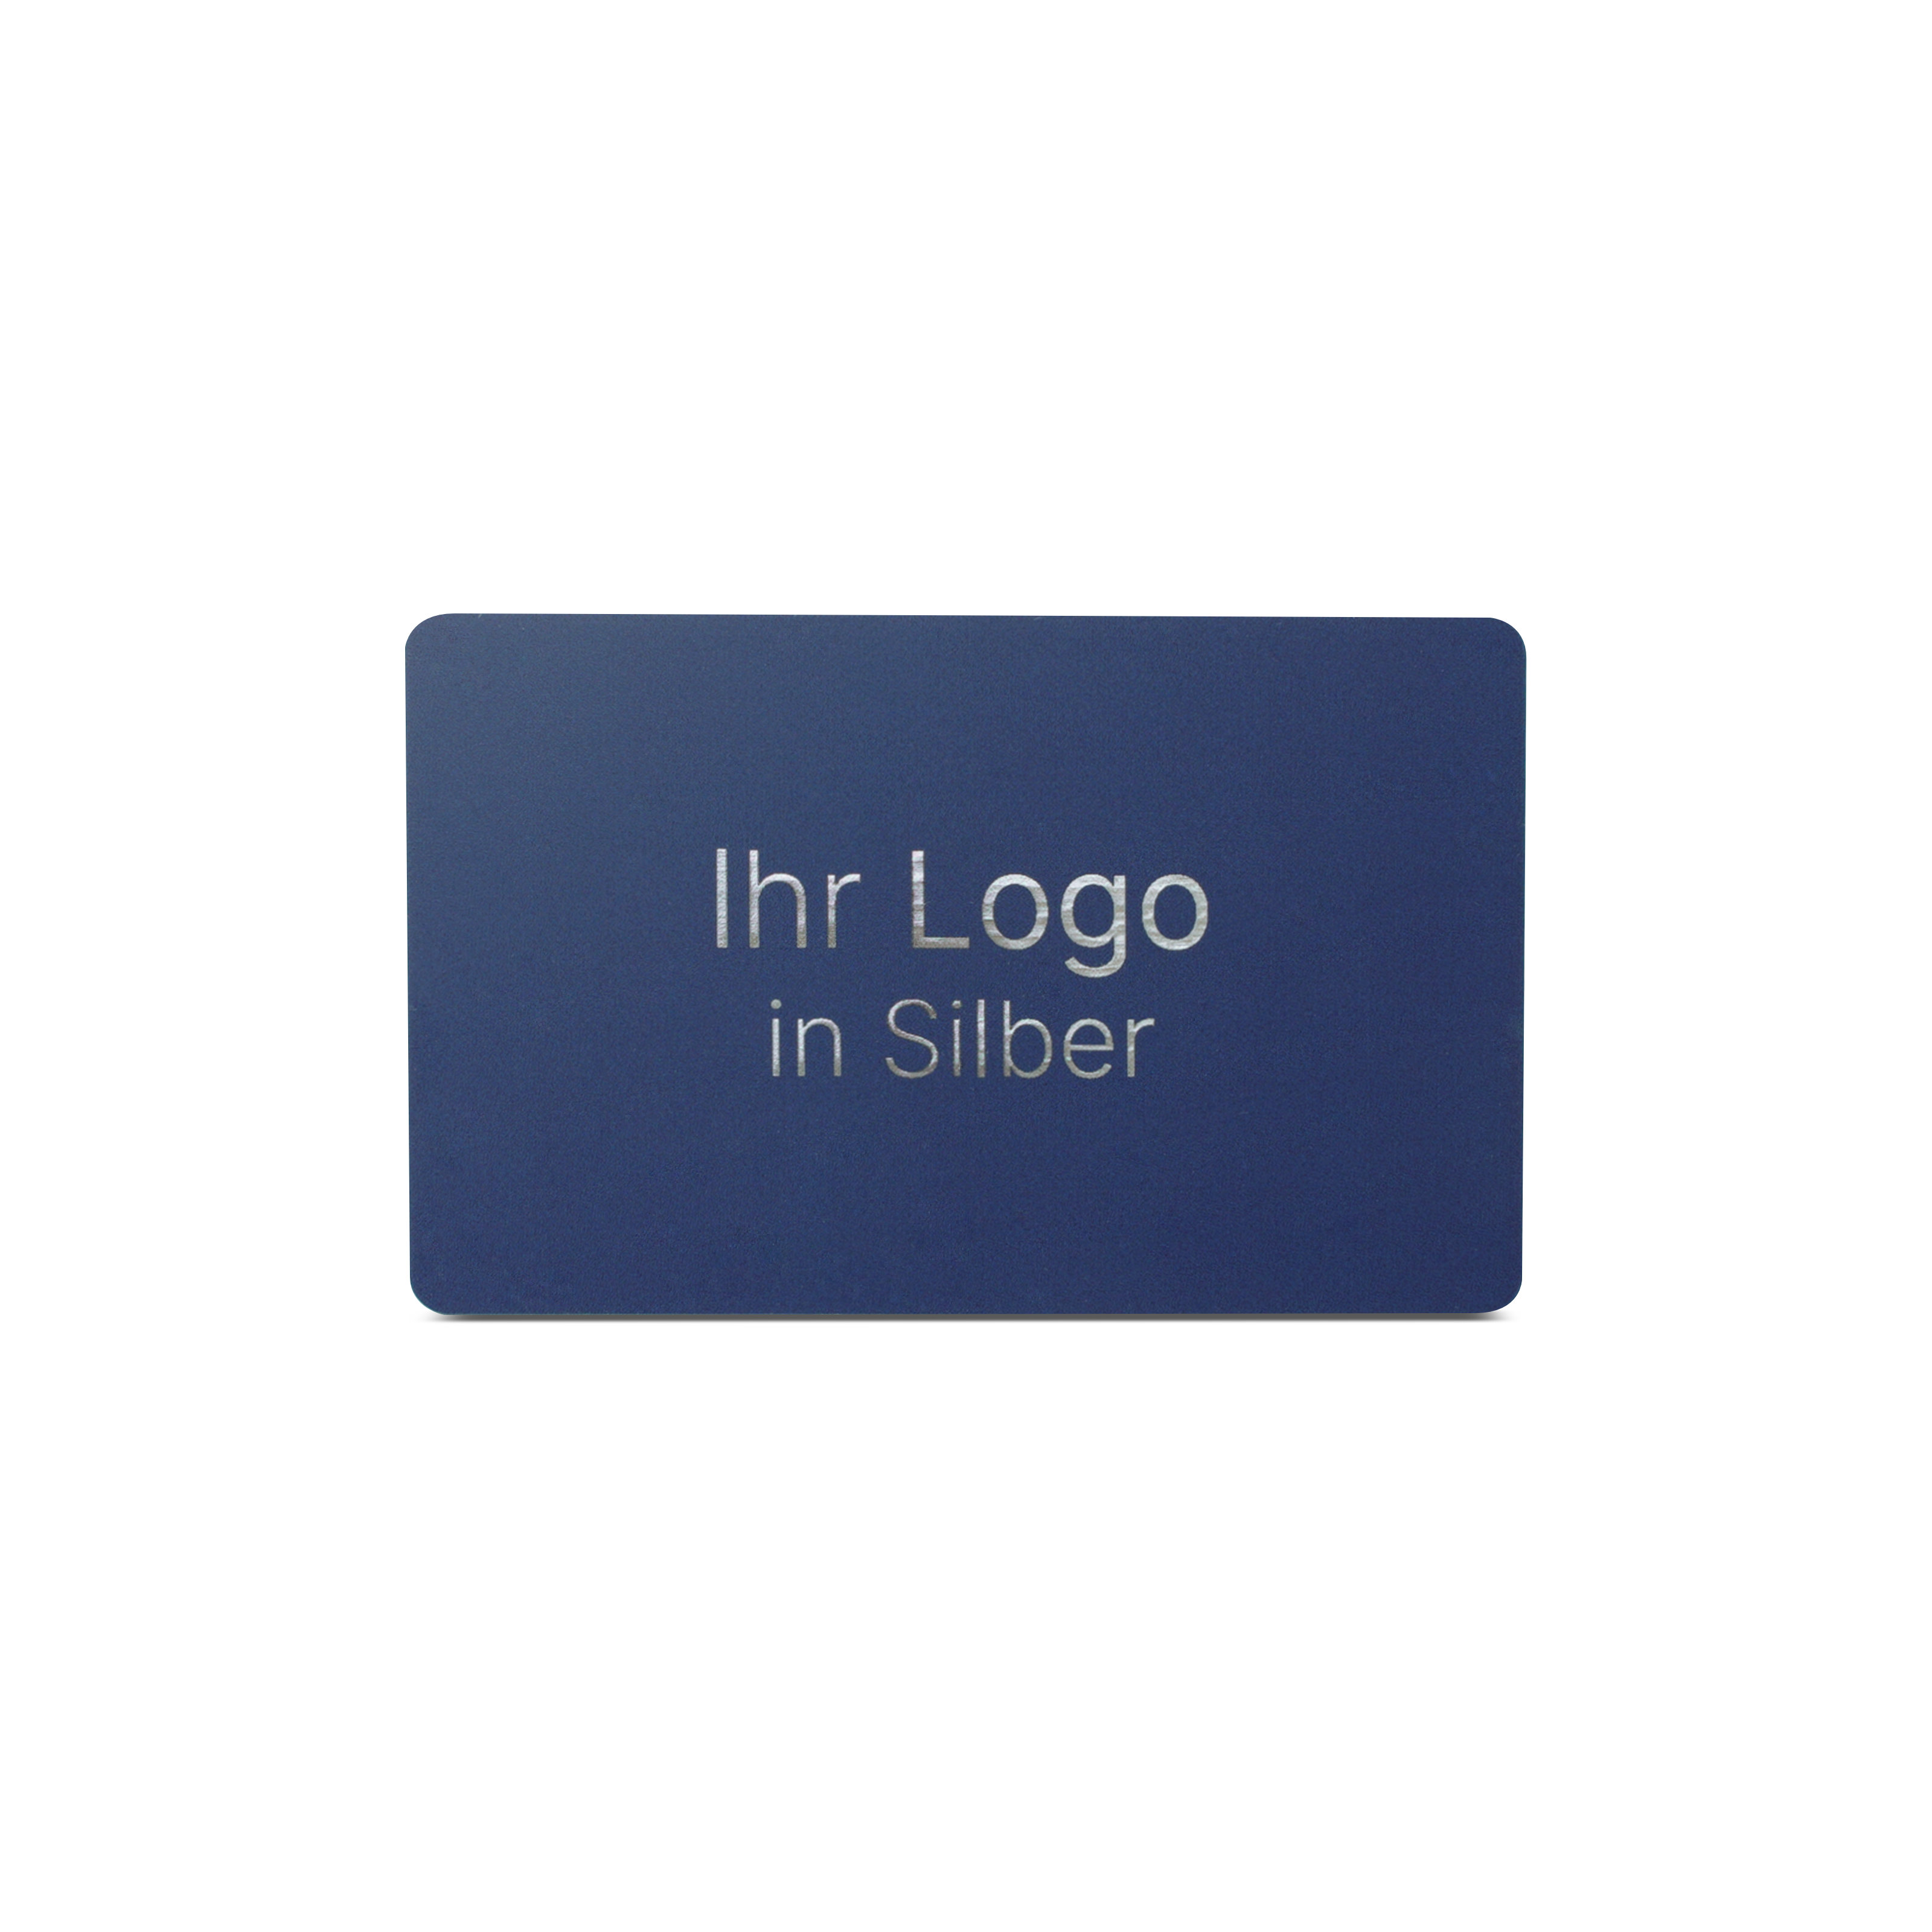 Blaue NFC Karte aus PVC mit Bedruckung "Ihr Logo in Silber"